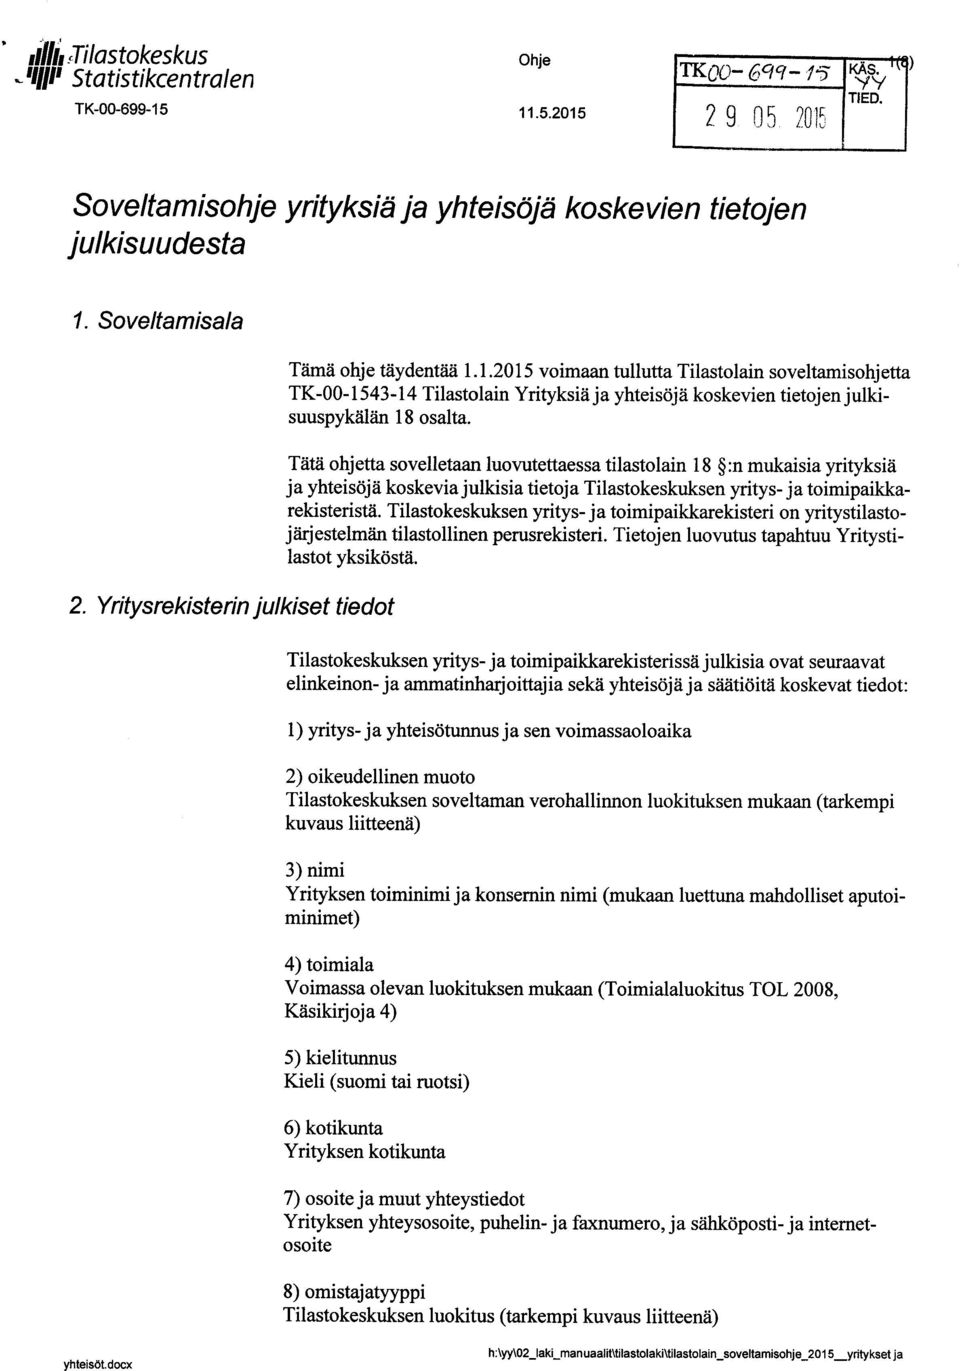 1.2015 voimaan tullutta Tilastolain soveltamisohj etta TK-00-1543-14 Tilastolain Yrityksiä ja yhteisöjä koskevien tietojen julkisuuspykälän 18 osalta.